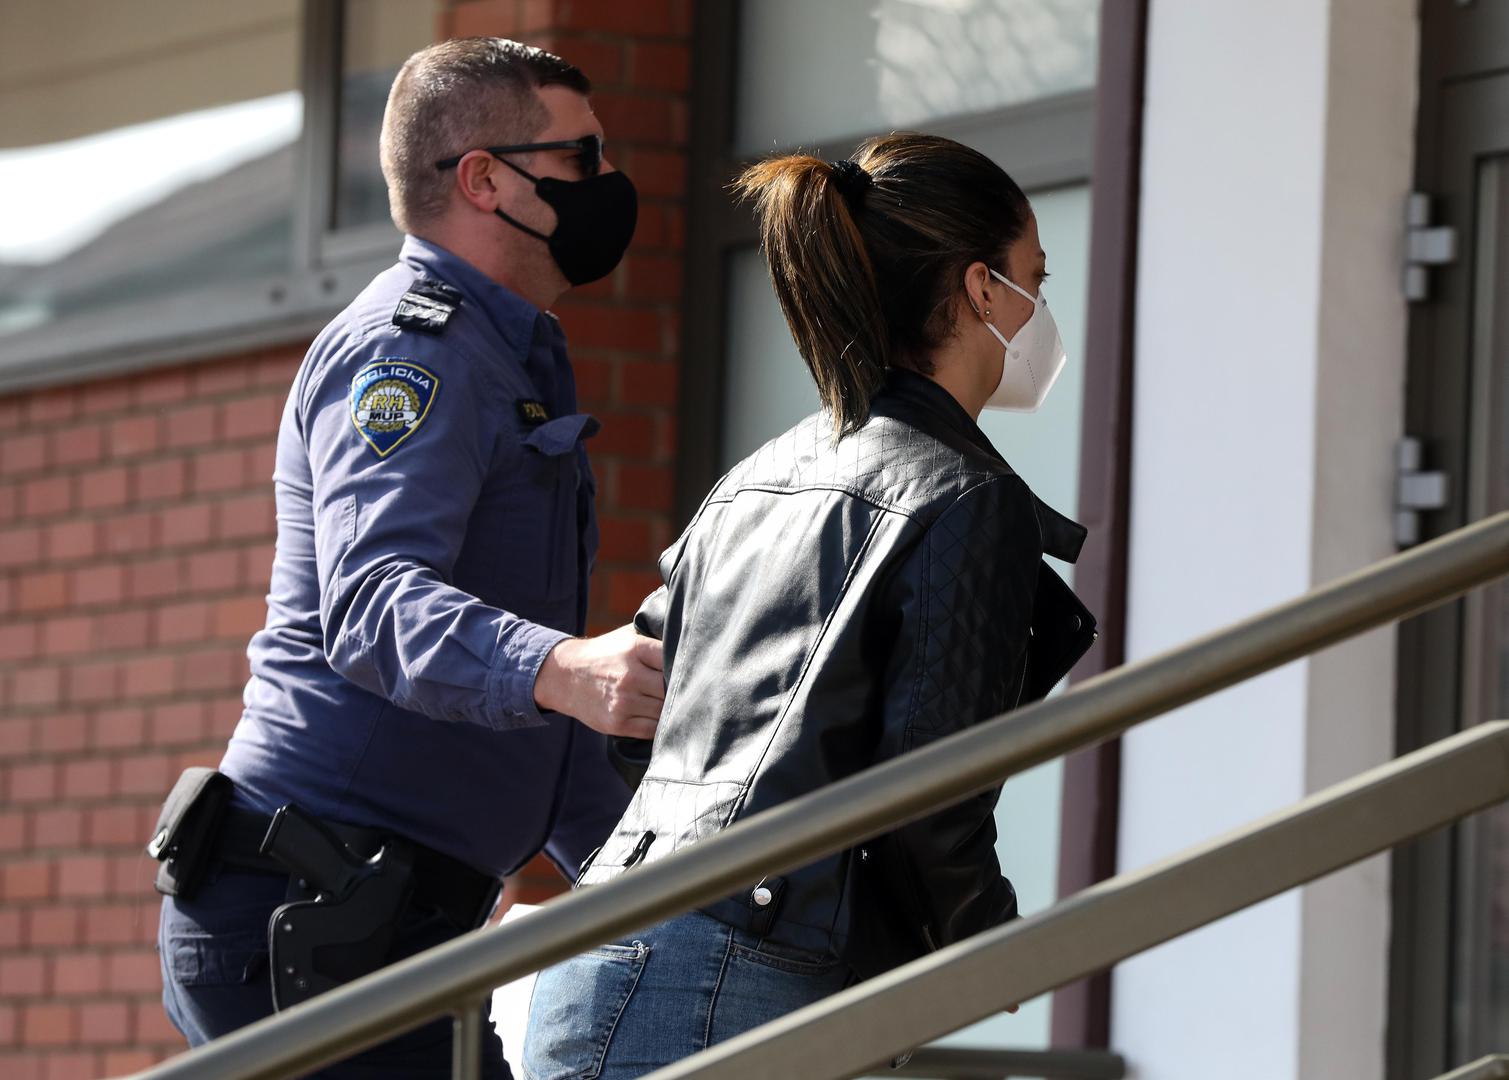 Nakon dovršenog kriminalističkog istraživanja osumnjičena je predana pritvorskom nadzorniku dok je kaznena prijava podnesena nadležnom državnom odvjetništvu, izvijestila je jutros Policijska uprava zagrebačka. 